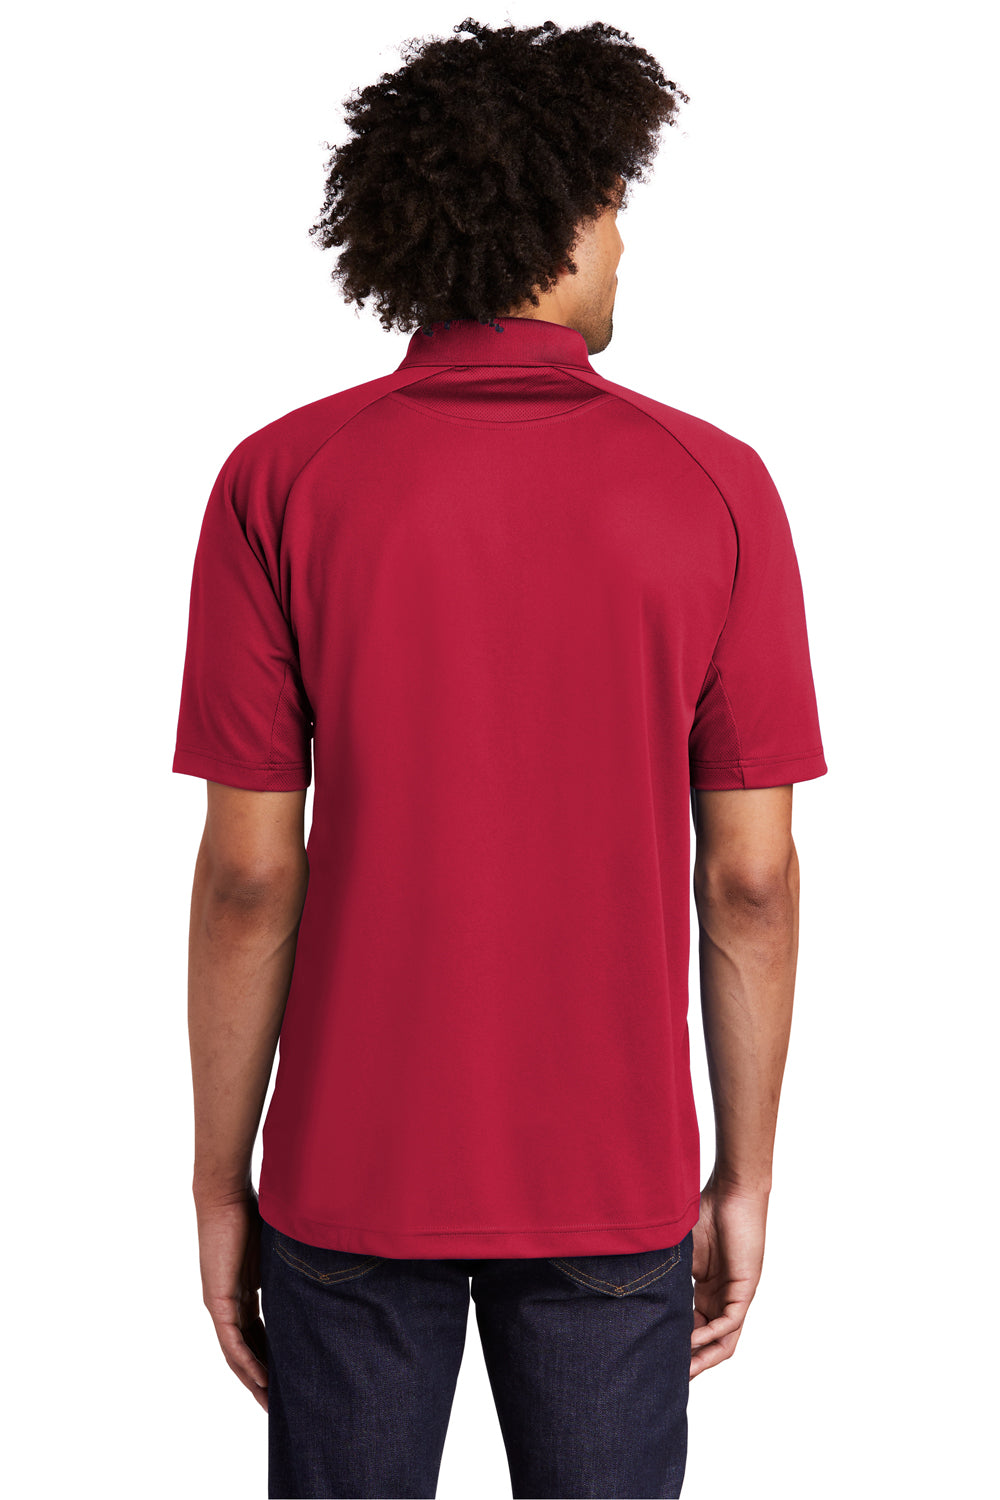 Sport-Tek T474 Mens Dri-Mesh Moisture Wicking Short Sleeve Polo Shirt Red Back